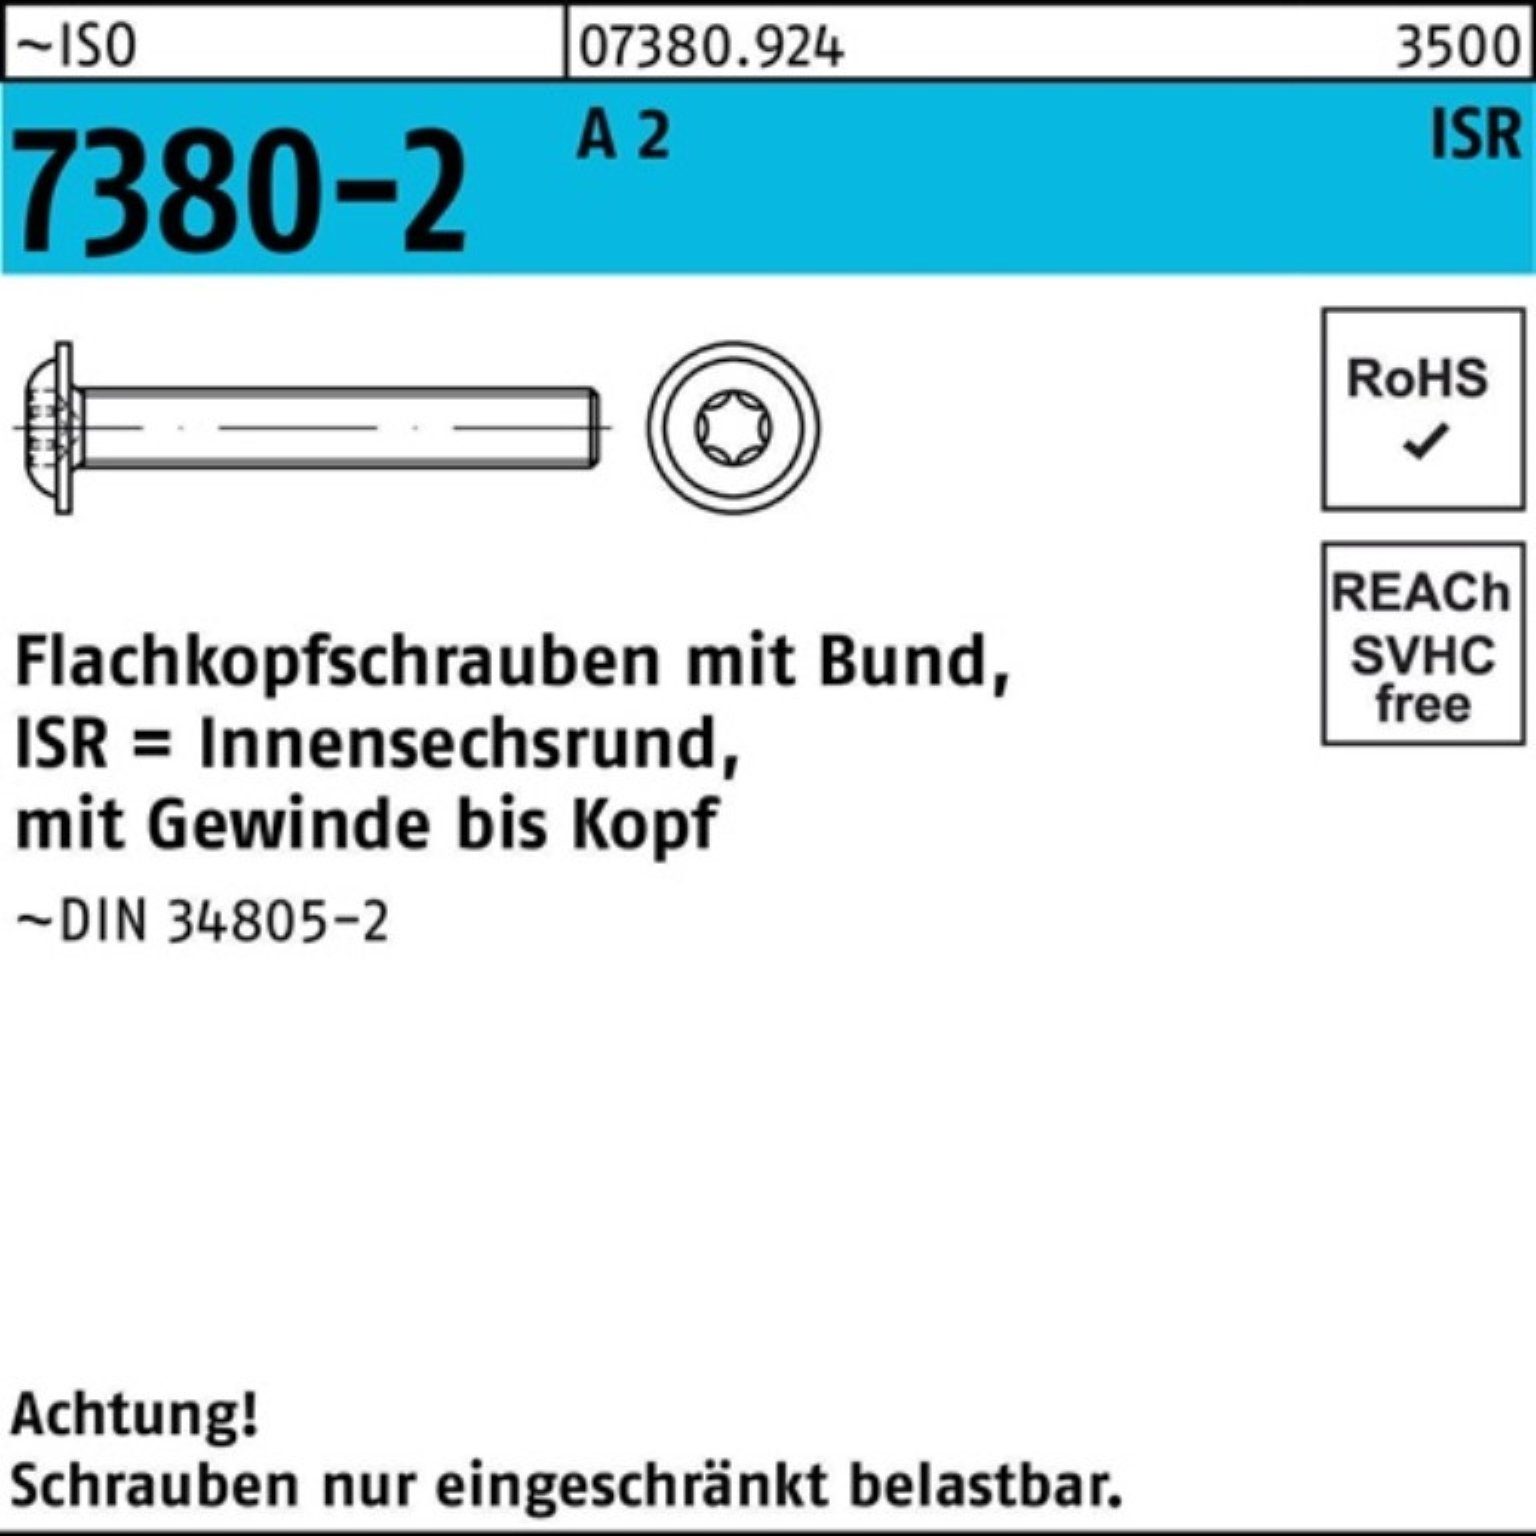 Reyher Schraube 200er Pack VG 7380-2 ISO A Flachkopfschraube 200 30-T40 2 Bund/ISR M8x